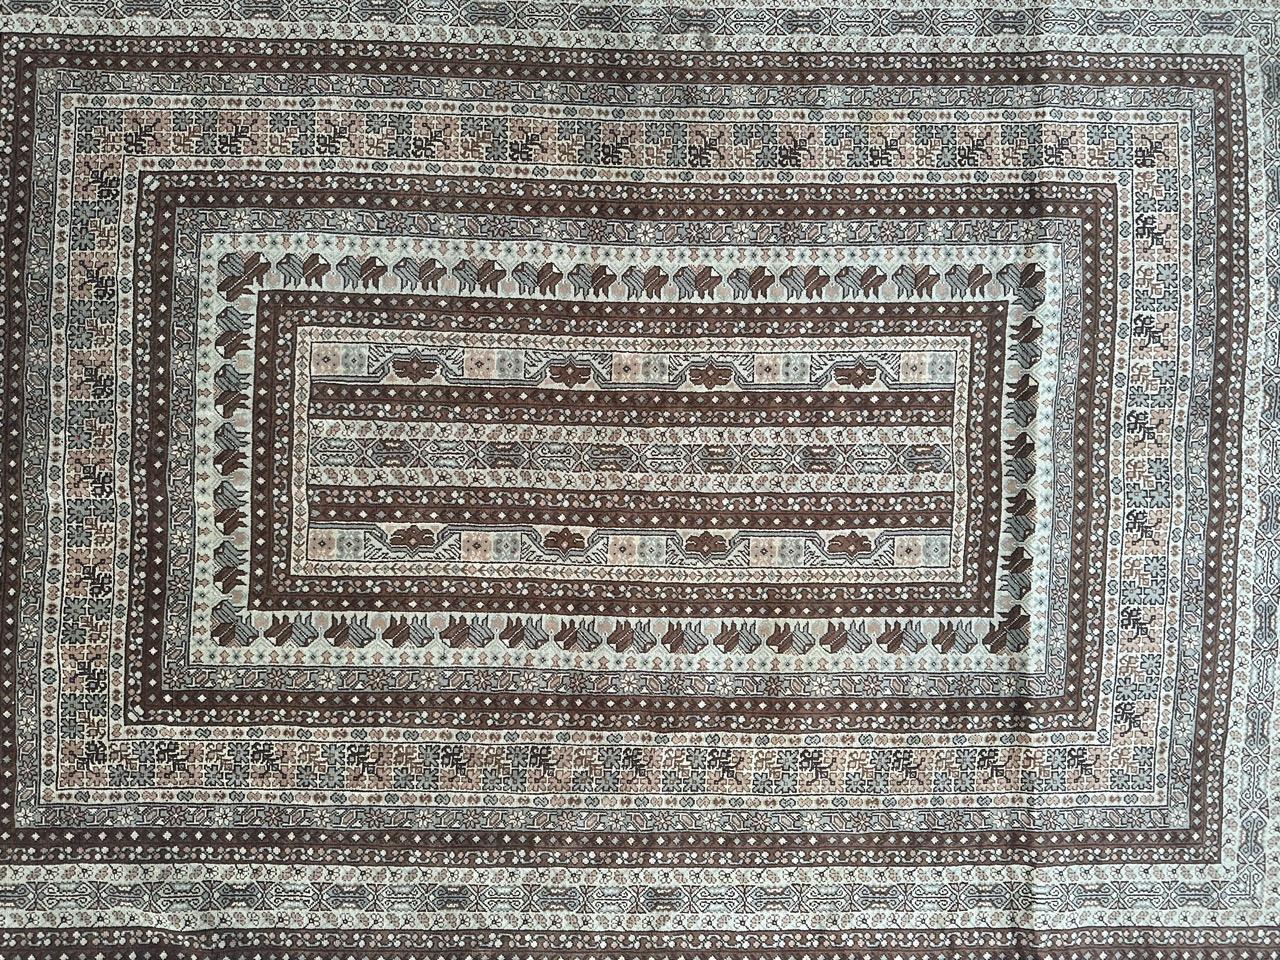 Magnifique tapis tunisien du milieu du 20e siècle, méticuleusement tissé à la main en laine sur coton, présentant des motifs géométriques et tribaux complexes dans de jolies couleurs. Ce tapis est une pièce décorative frappante avec son design